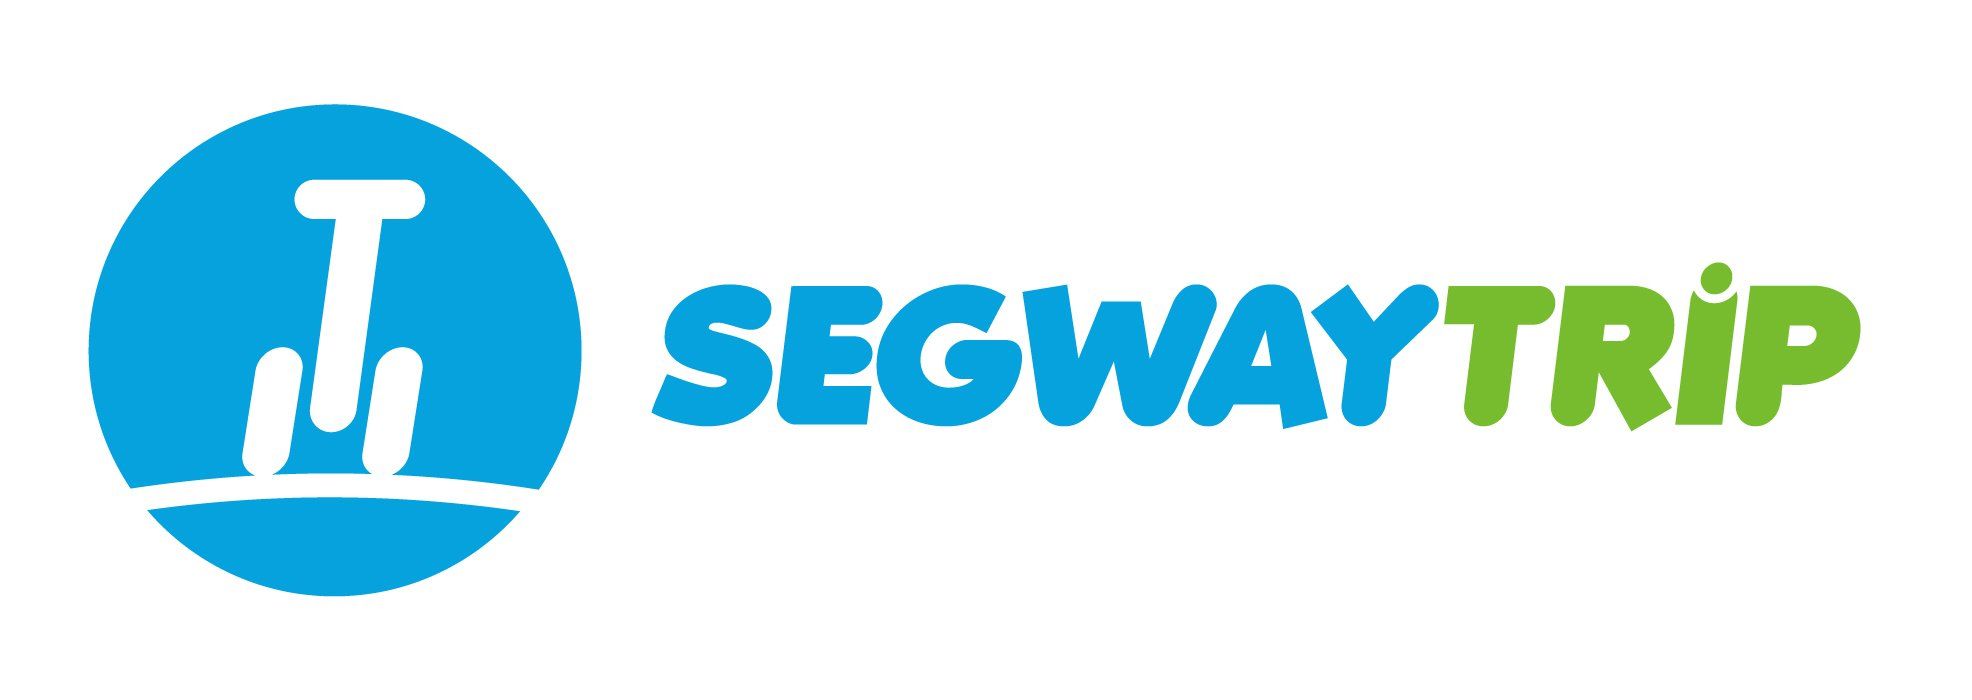 SegwayTrip-logo-horizontal